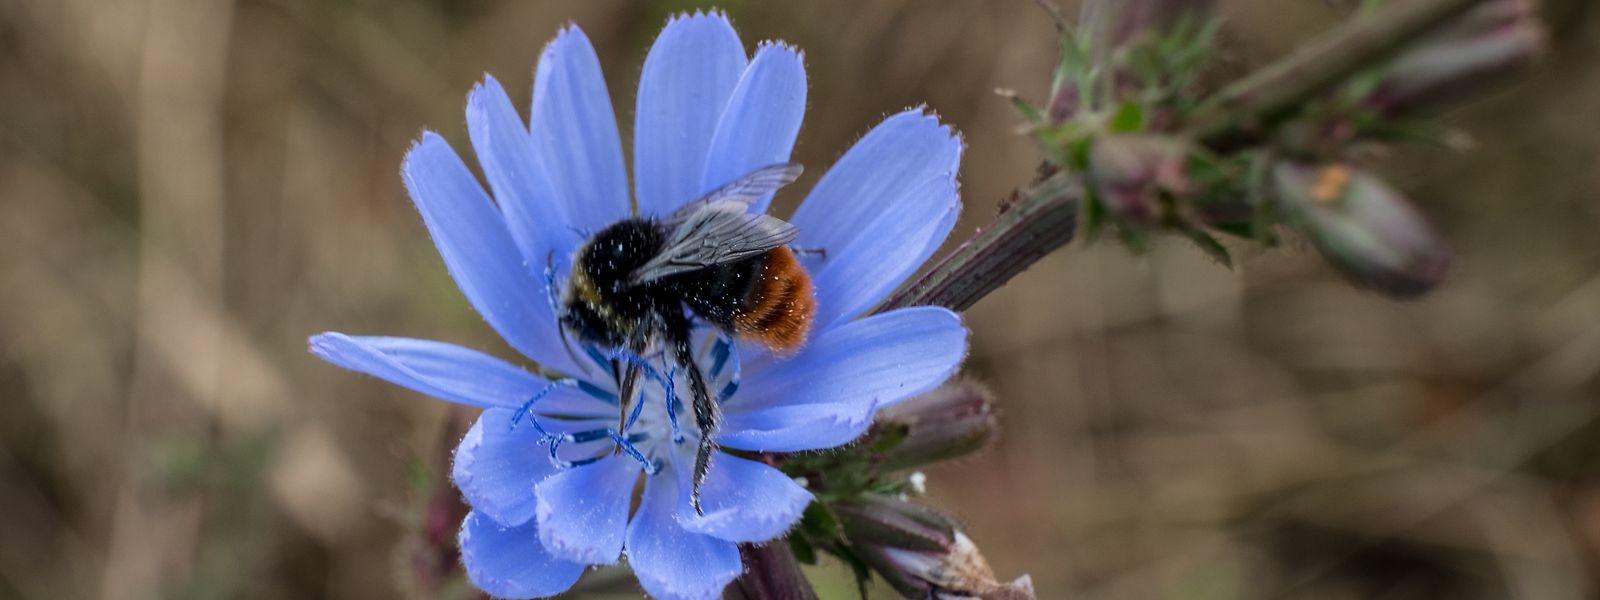 Bienen leisten wichtige Arbeit, auch für die Produktion von Lebensmitteln - doch mancherorts sinkt ihr Bestand bedrohlich.